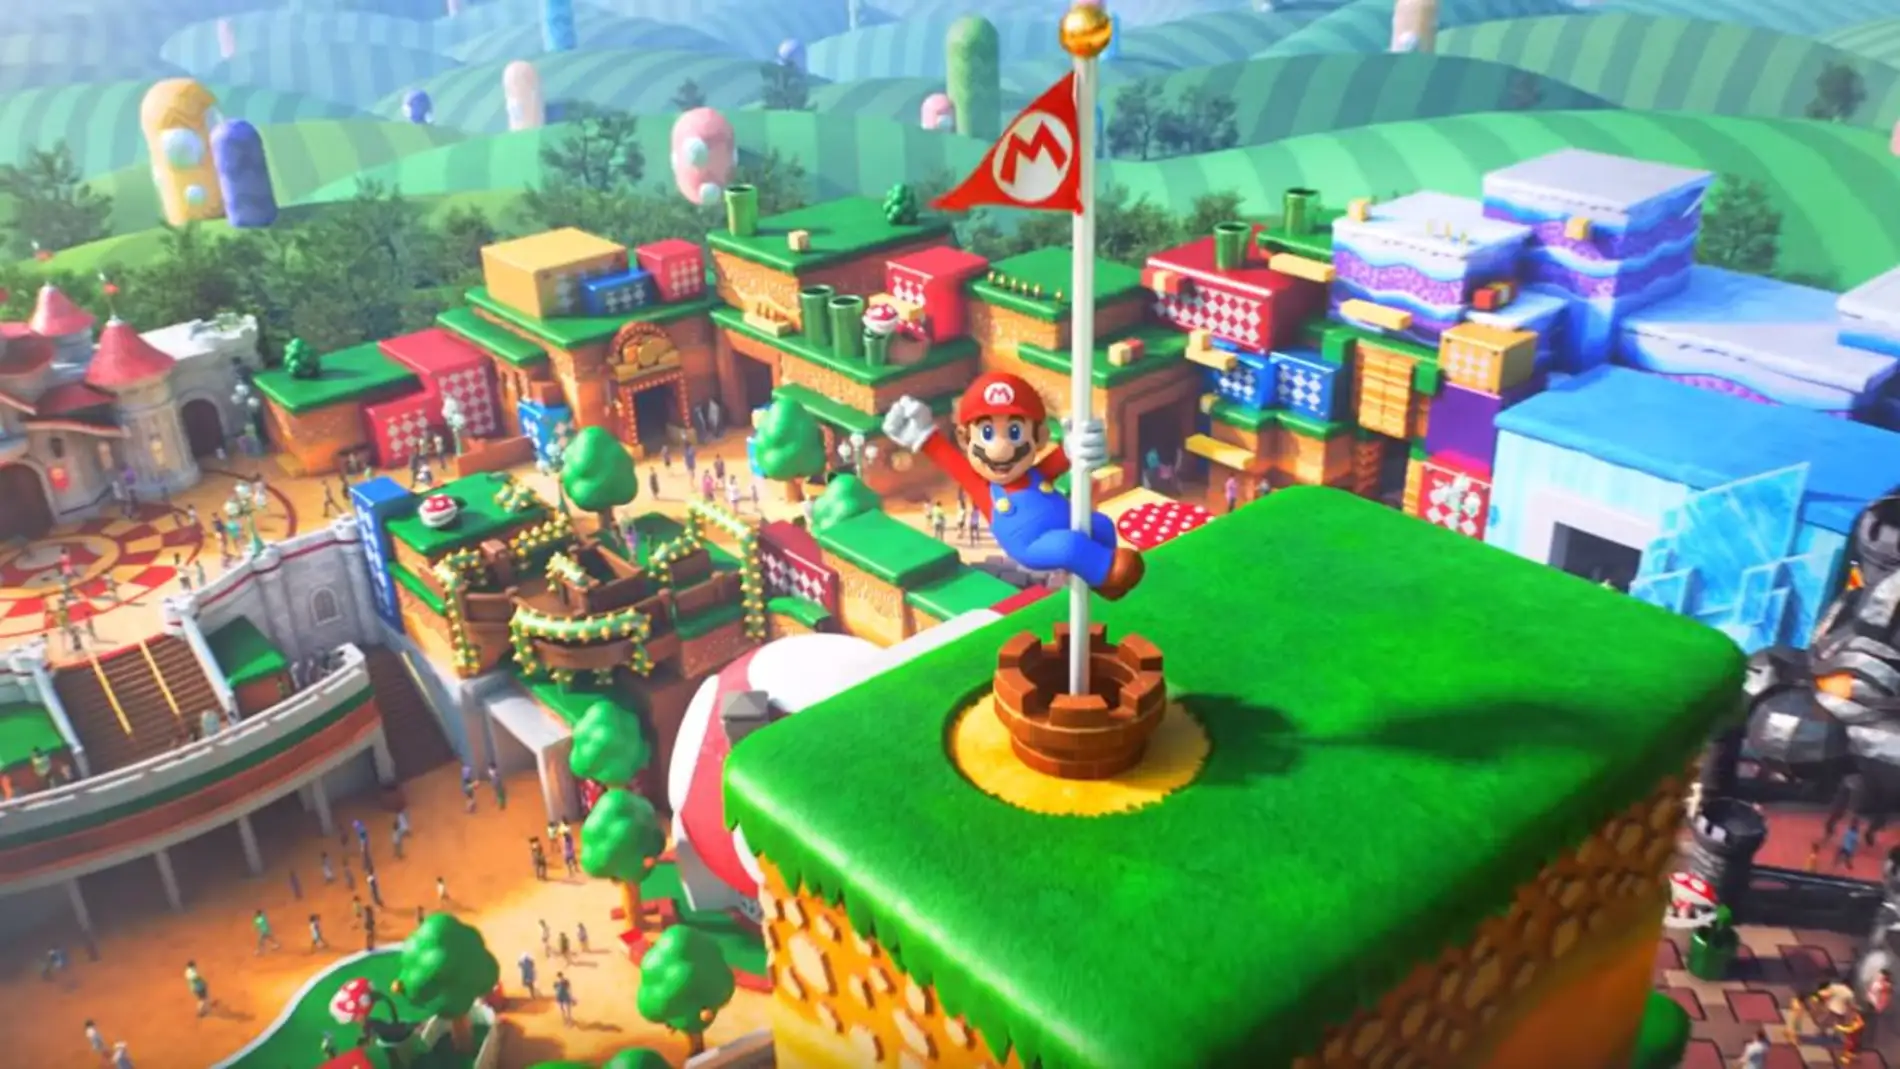 llave inglesa Arado Pasto Super Nintendo World: Atracciones, minijuegos y todo lo que necesitas saber  sobre el parque temático de Nintendo - VÍDEO